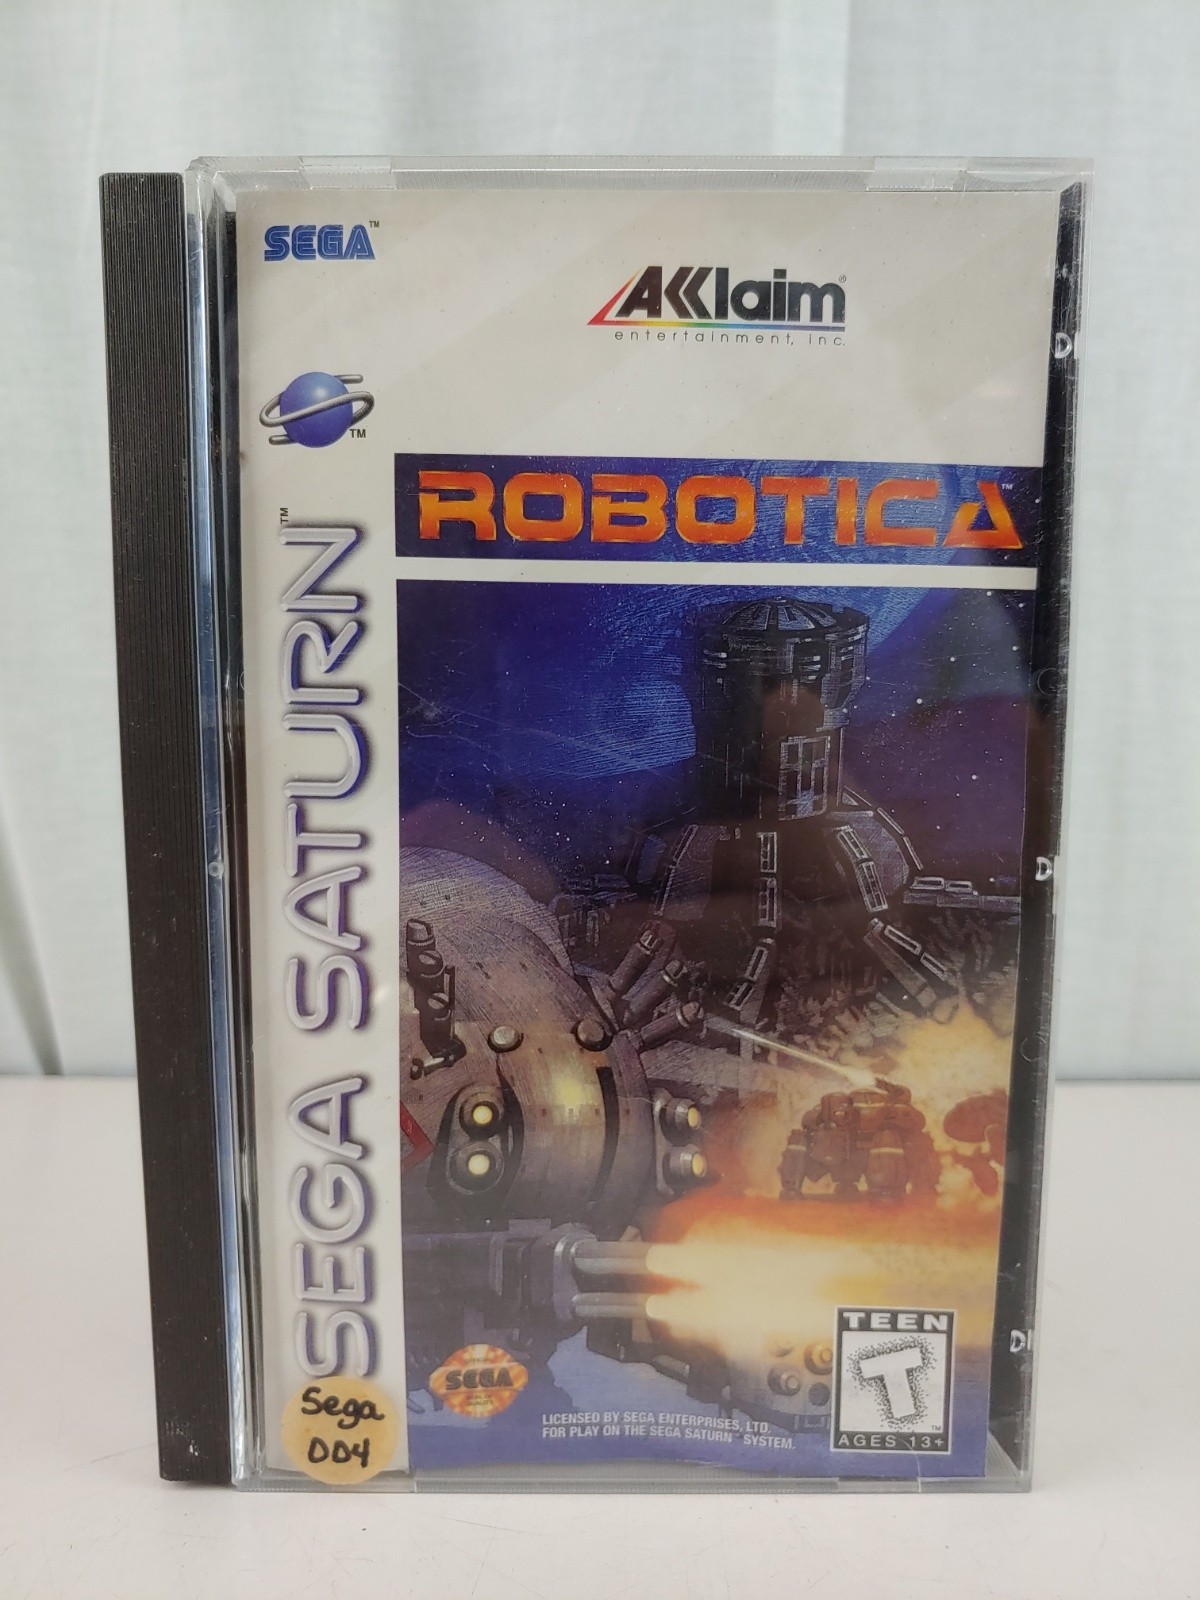 Robotica (Sega Saturn, complete)